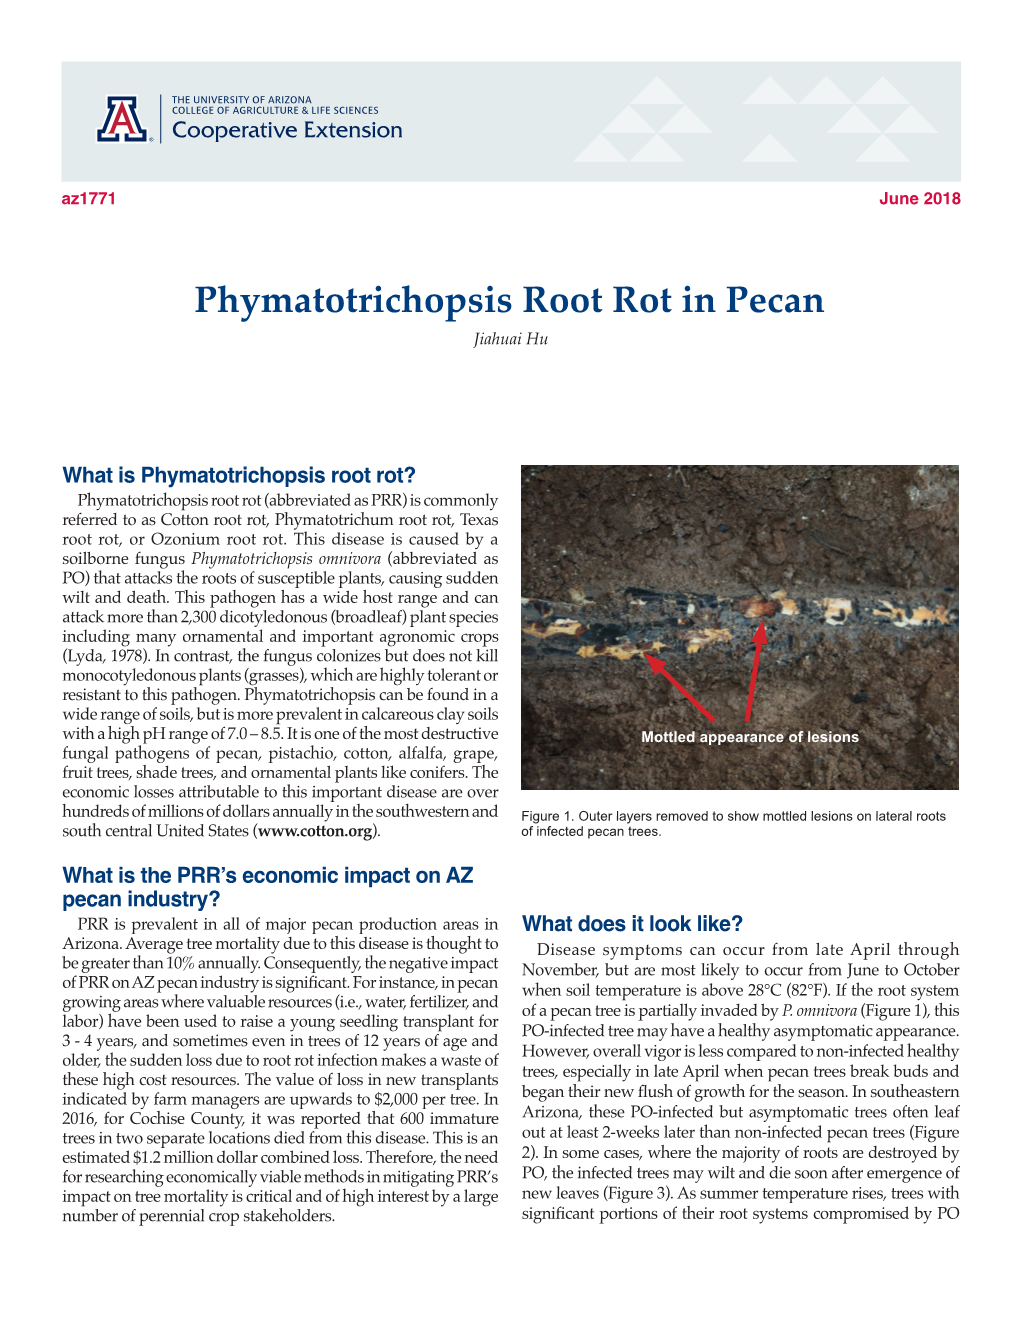 Phymatotrichopsis Root Rot in Pecan Jiahuai Hu